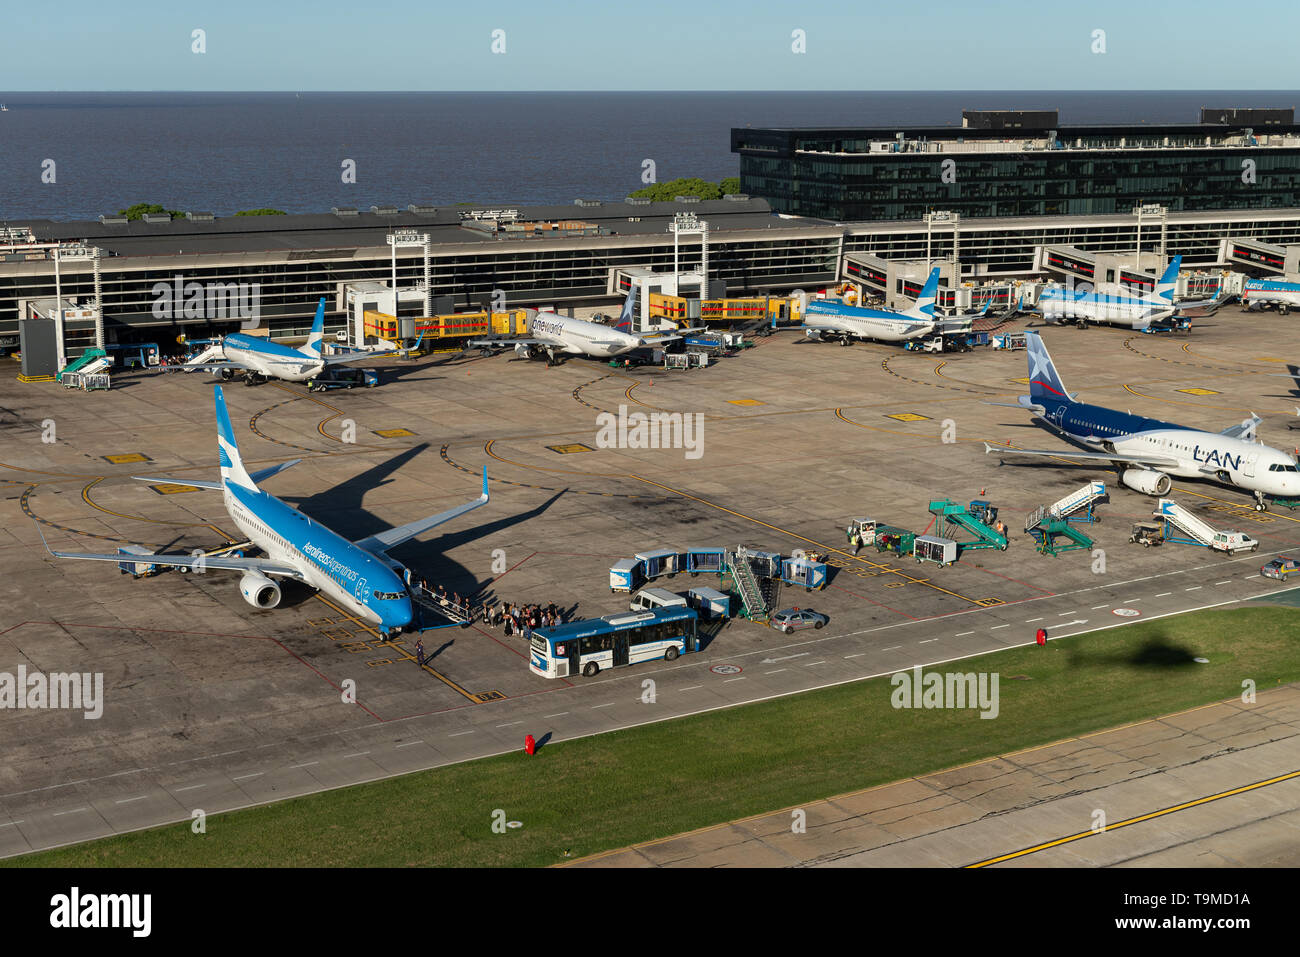 Immagine aerea di Jorge Newbery Airfield (spagnolo: "L'Aeroporto Aeroparque Jorge Newbery', IATA: AEP, ICAO: SABE) è un aeroporto internazionale situato a Palermo nei Foto Stock